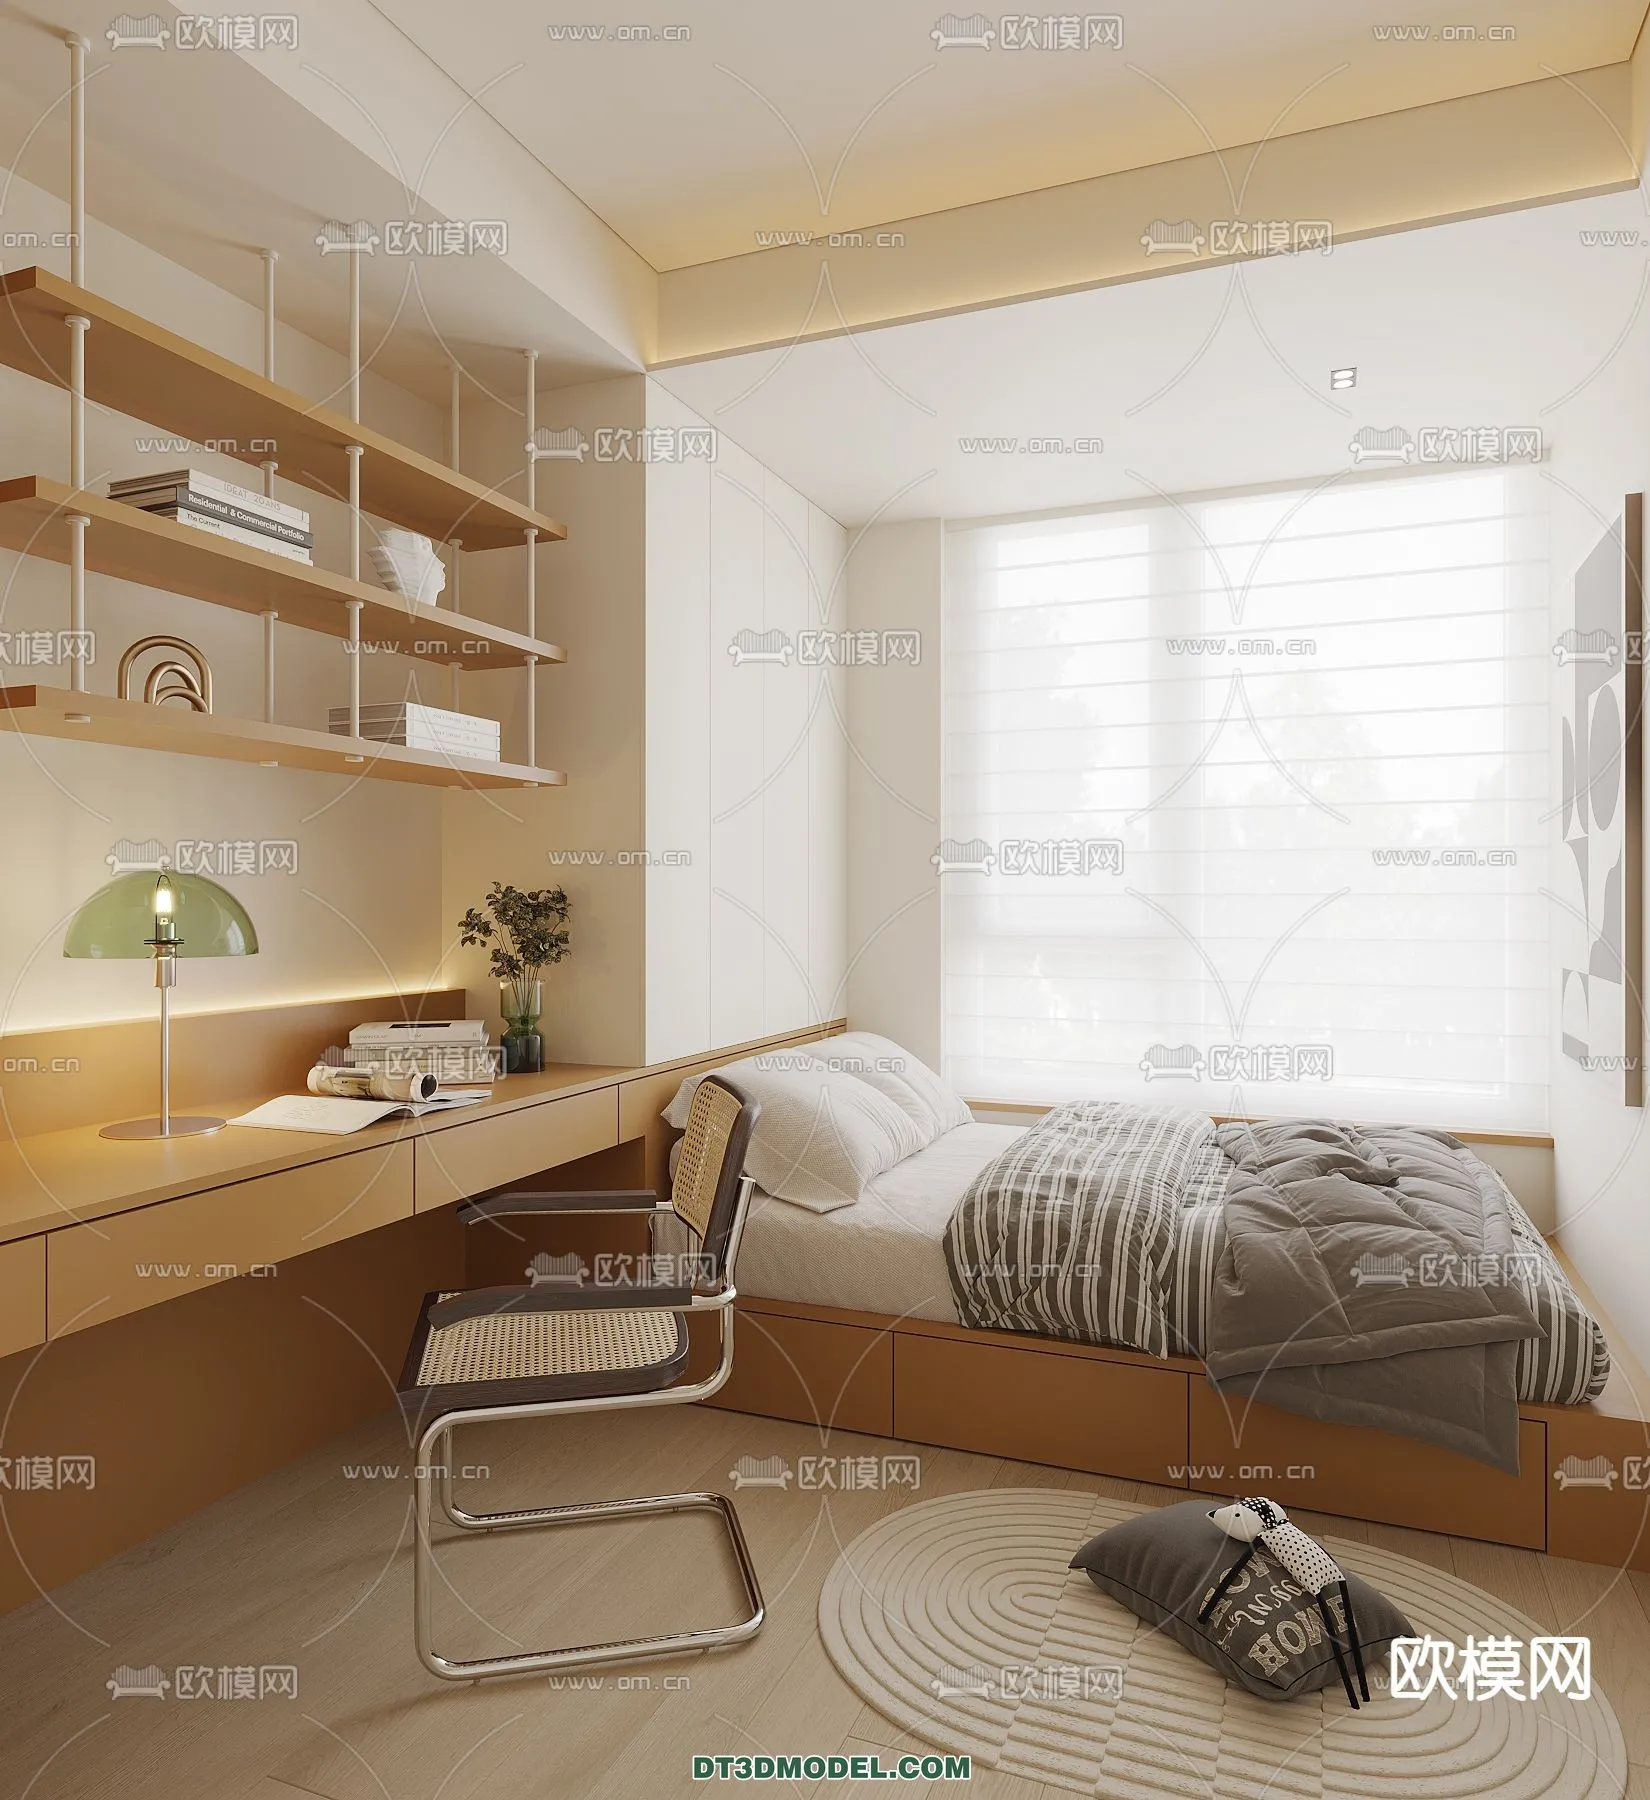 Tatami Bedroom – Japan Bedroom – 3D Scene – 016